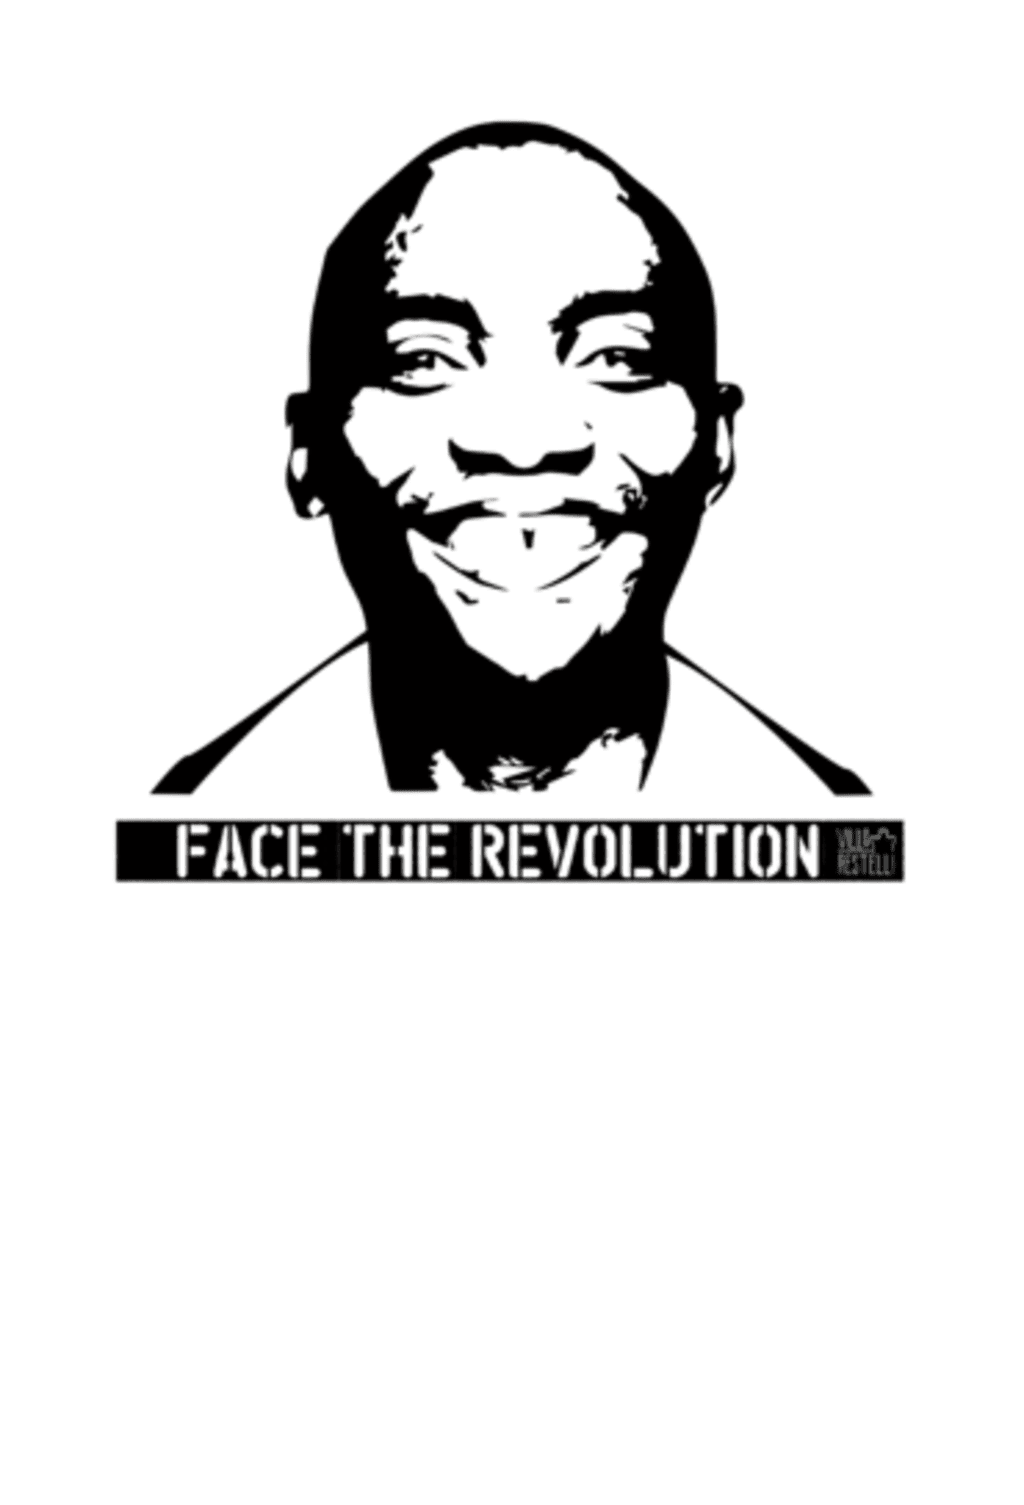 * FACE THE REVOLUTION * - Aboubakar Soumahoro